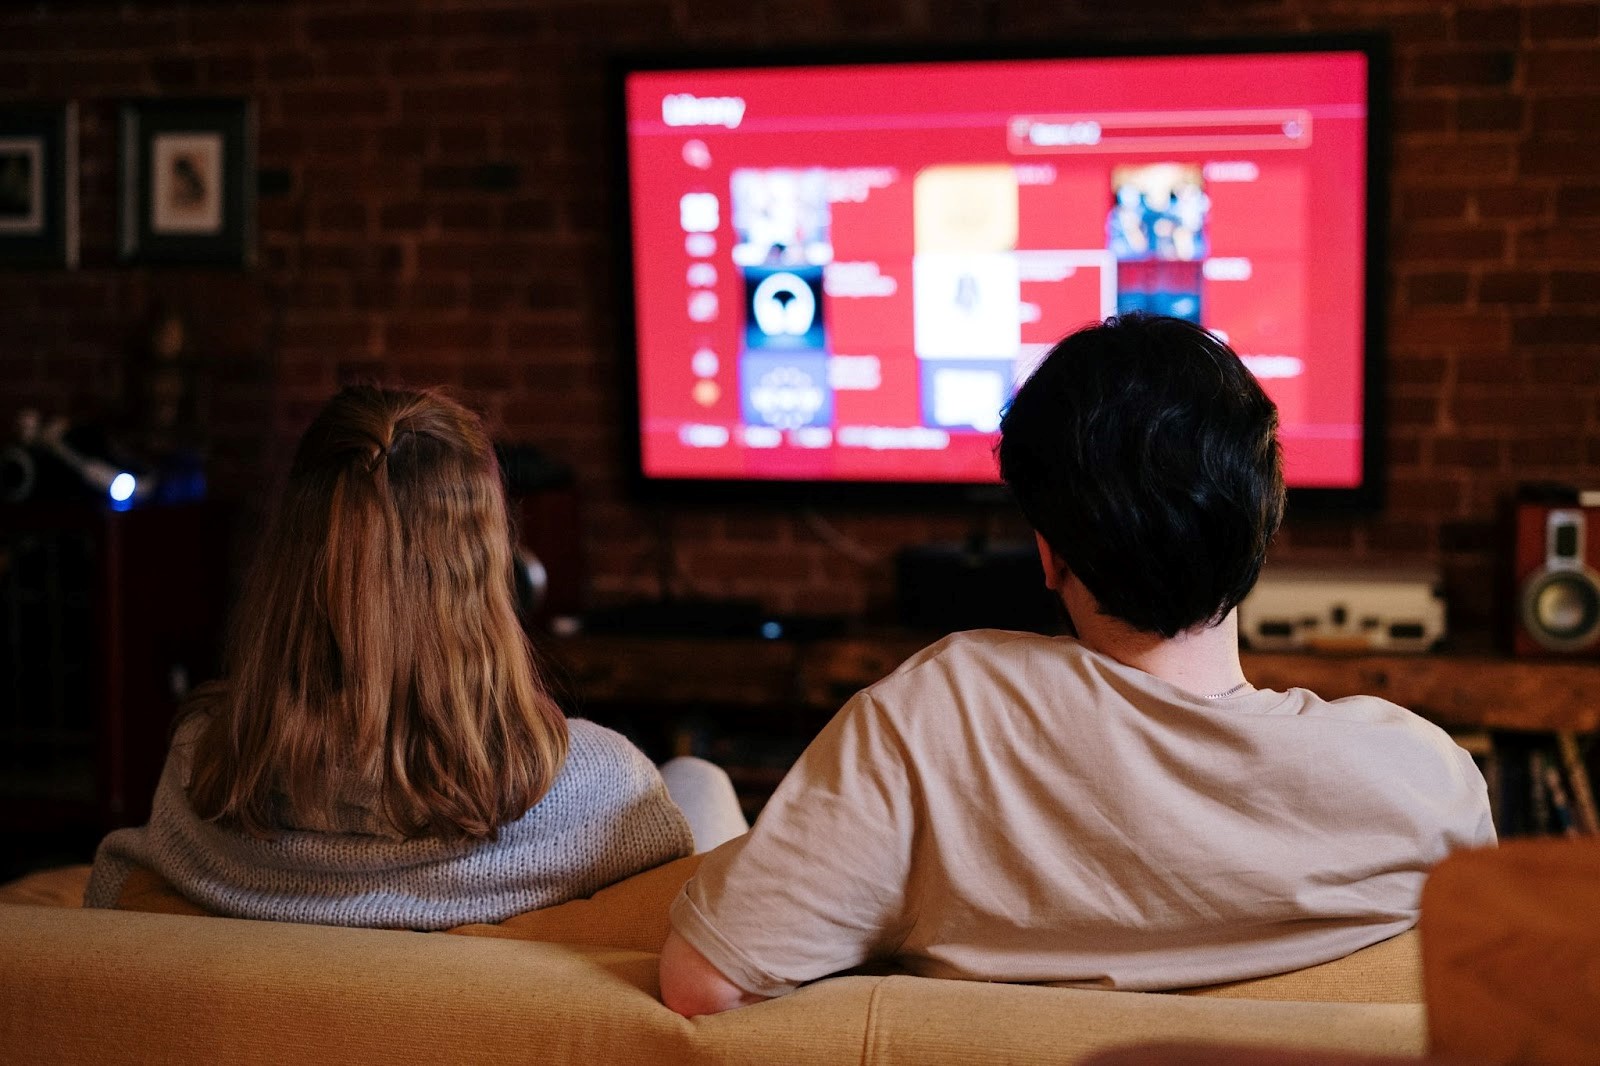 Uren plezant online tv kijken in huis dankzij isolatie